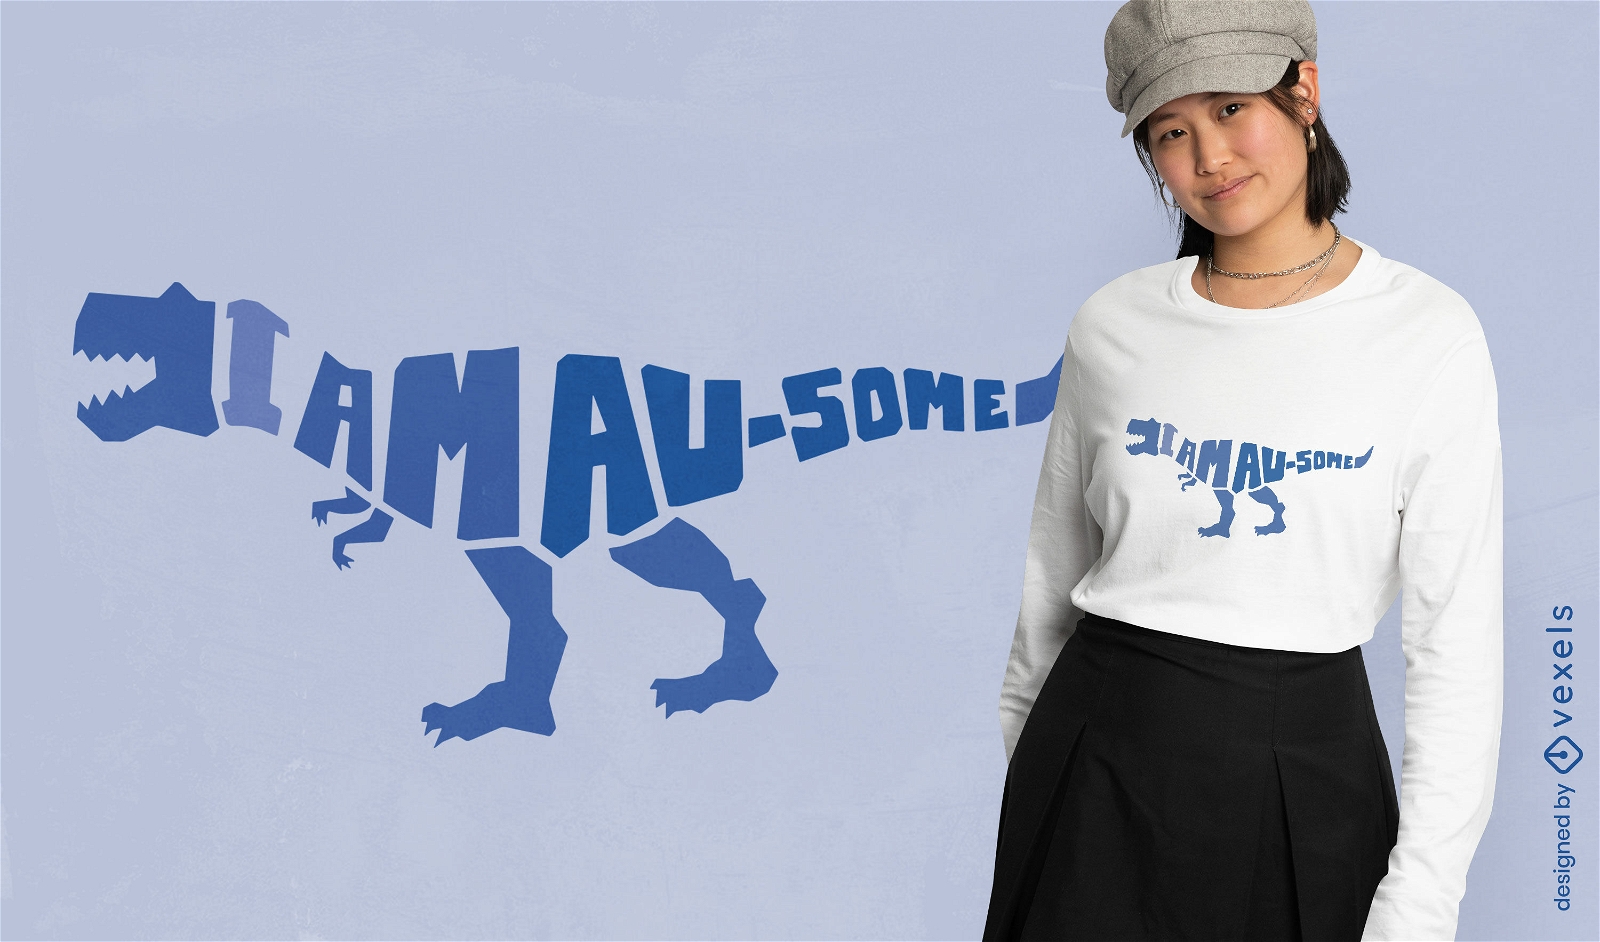 Autism awareness dinosaur t-shirt design